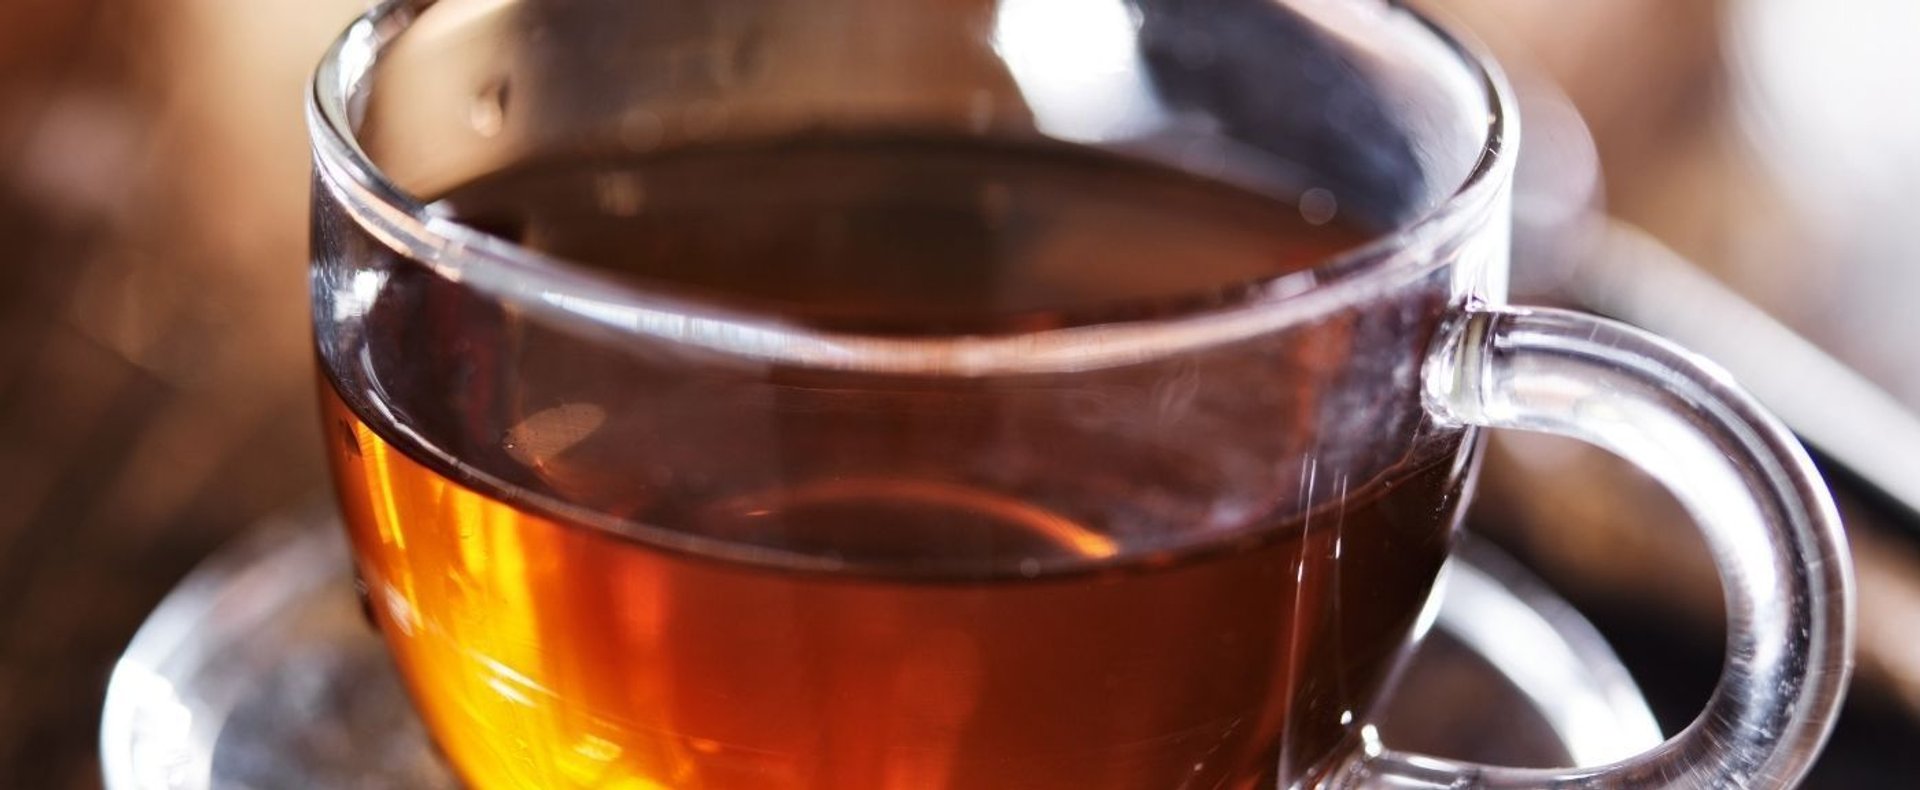 Herbata na odchudzanie może być niebezpieczna